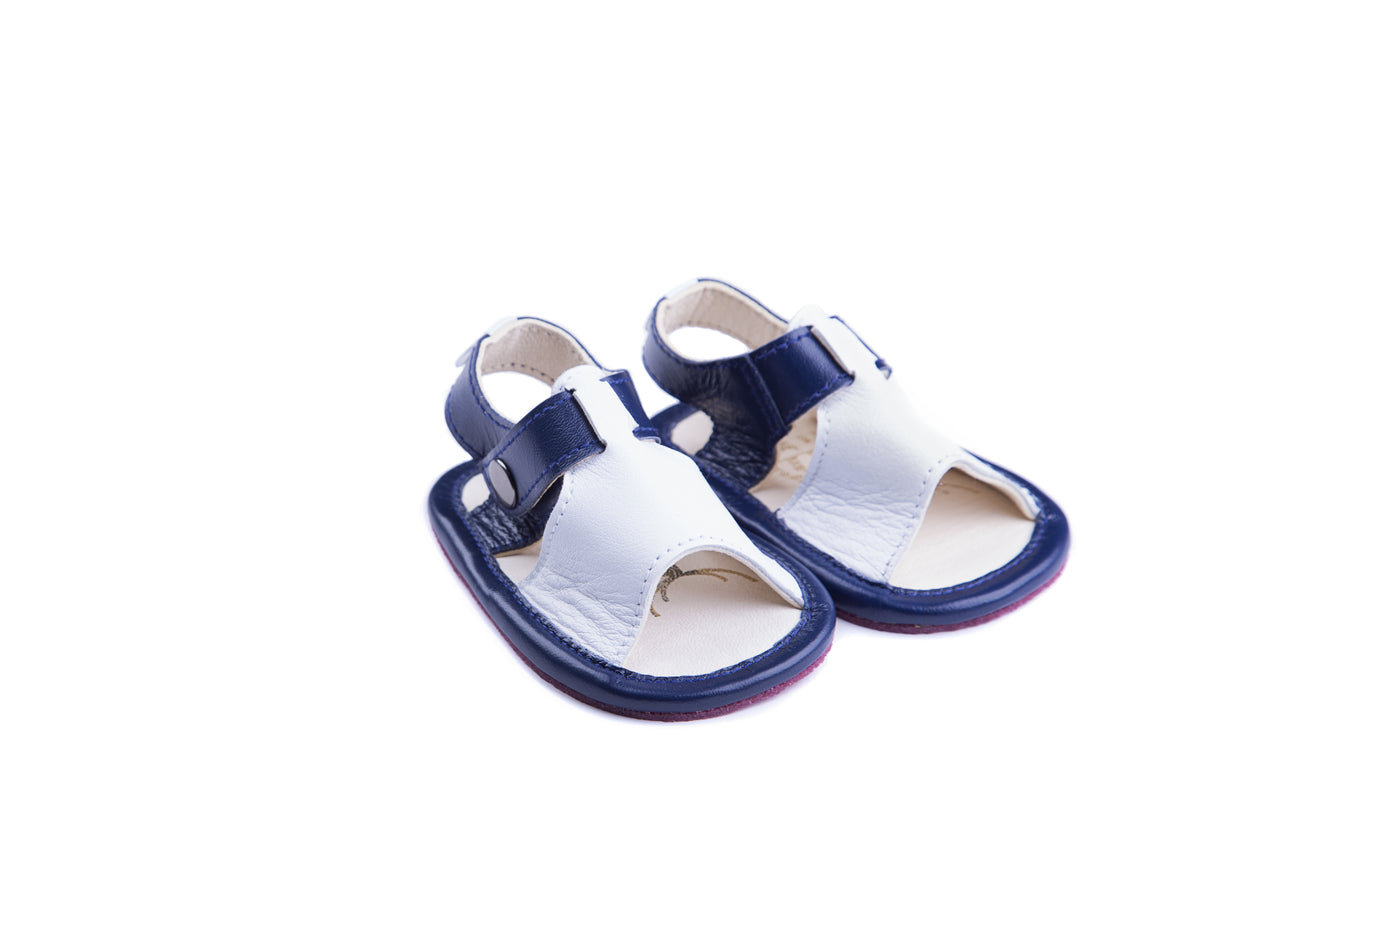 Sloane Sandals - blue/white